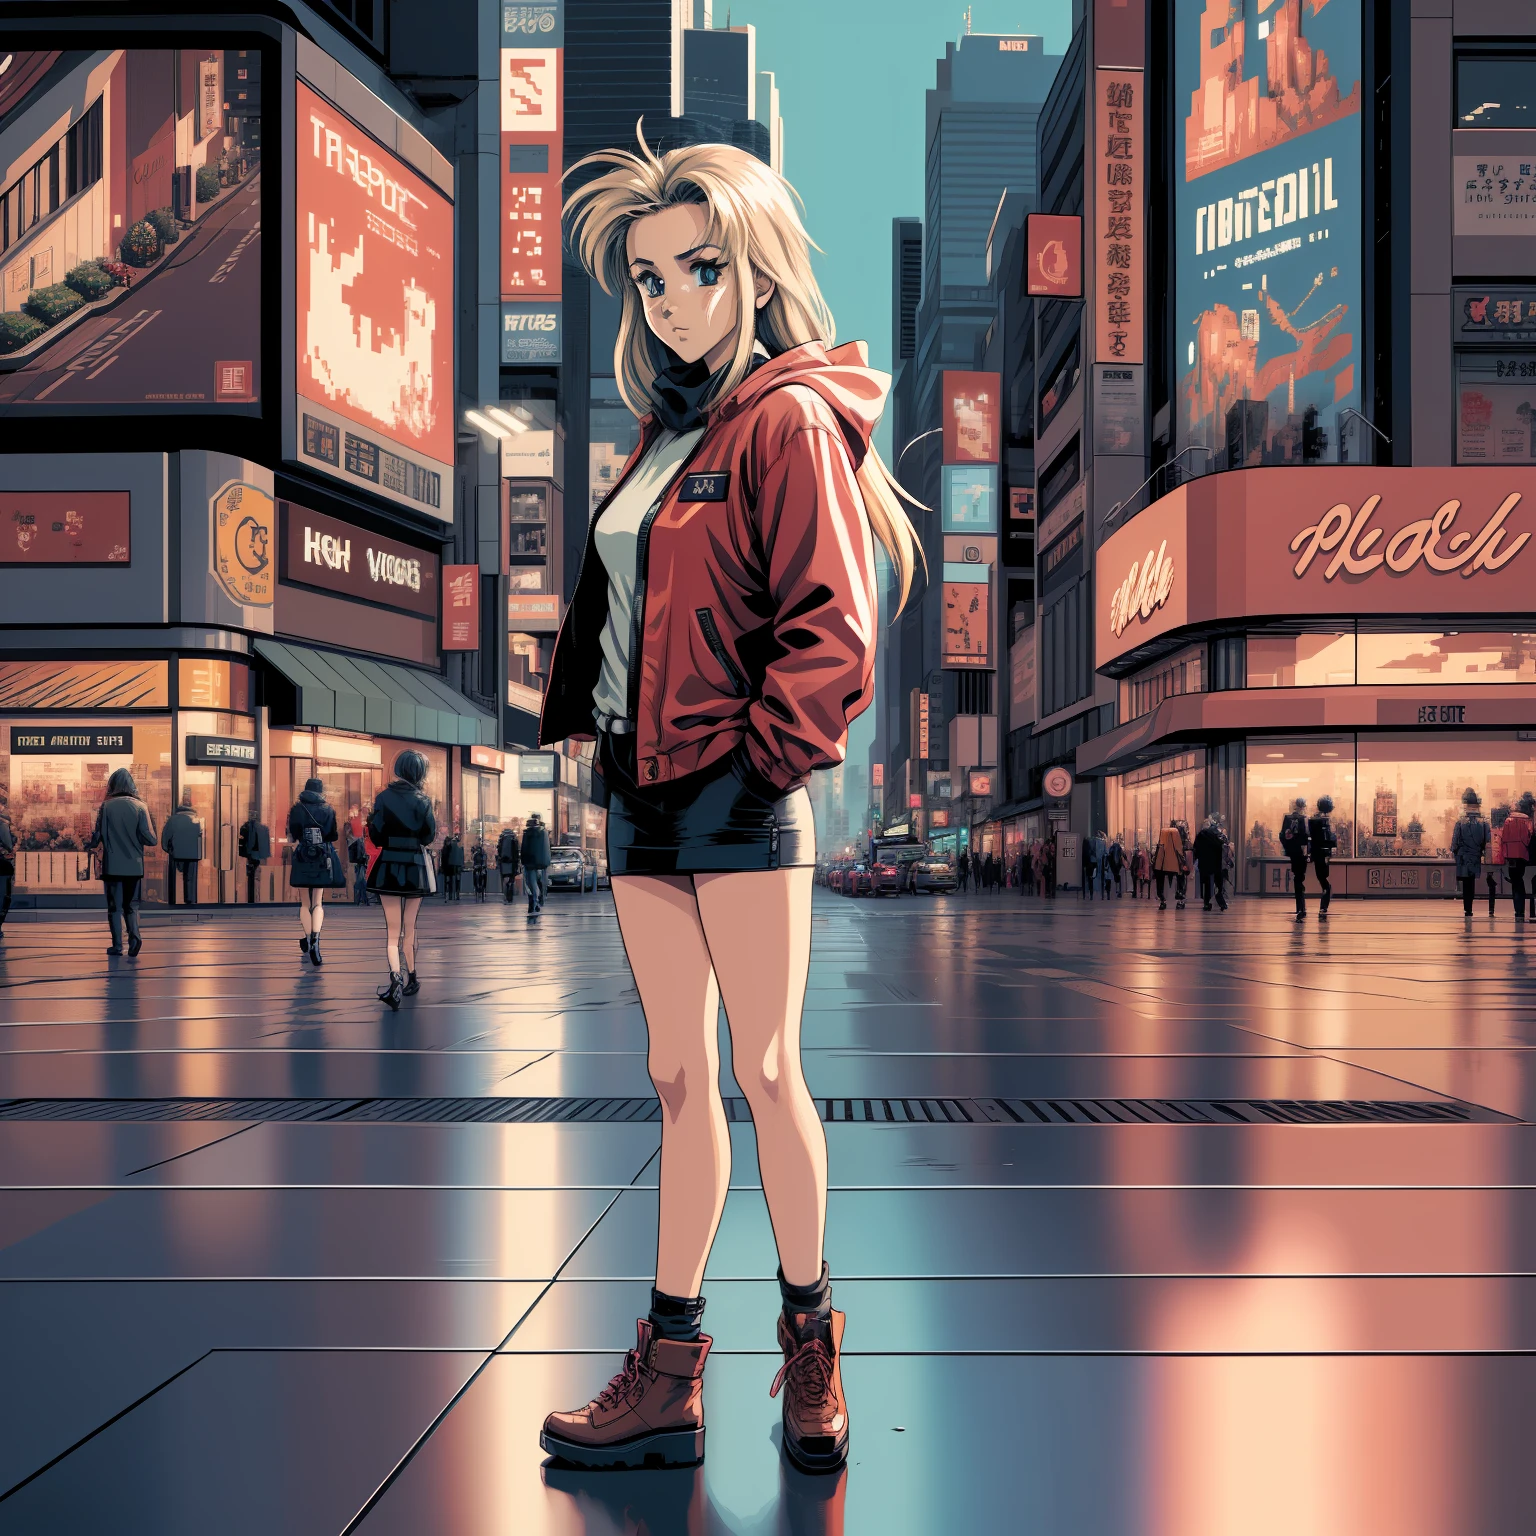 Une femme animée d&#39;apparence mature vêtue d&#39;une veste rouge regardant le clair de lune se refléter sur le béton près du passage pour piétons à l&#39;intersection de Shibuya, 3 0 4 0 x 1 4 4 0 pixel art, 3 0 4 0 x 1 4 4 0, Pixel art 32 bits, art pixelisé, pixel art détaillé et coloré,  pixel art animé soigneusement détaillé, pixel art anime détaillé à l&#39;origine, Pixel art néon détaillé, PC-98 pixel art, cyberpunk néon style anime pixel art, 1 couleurs 6 bits